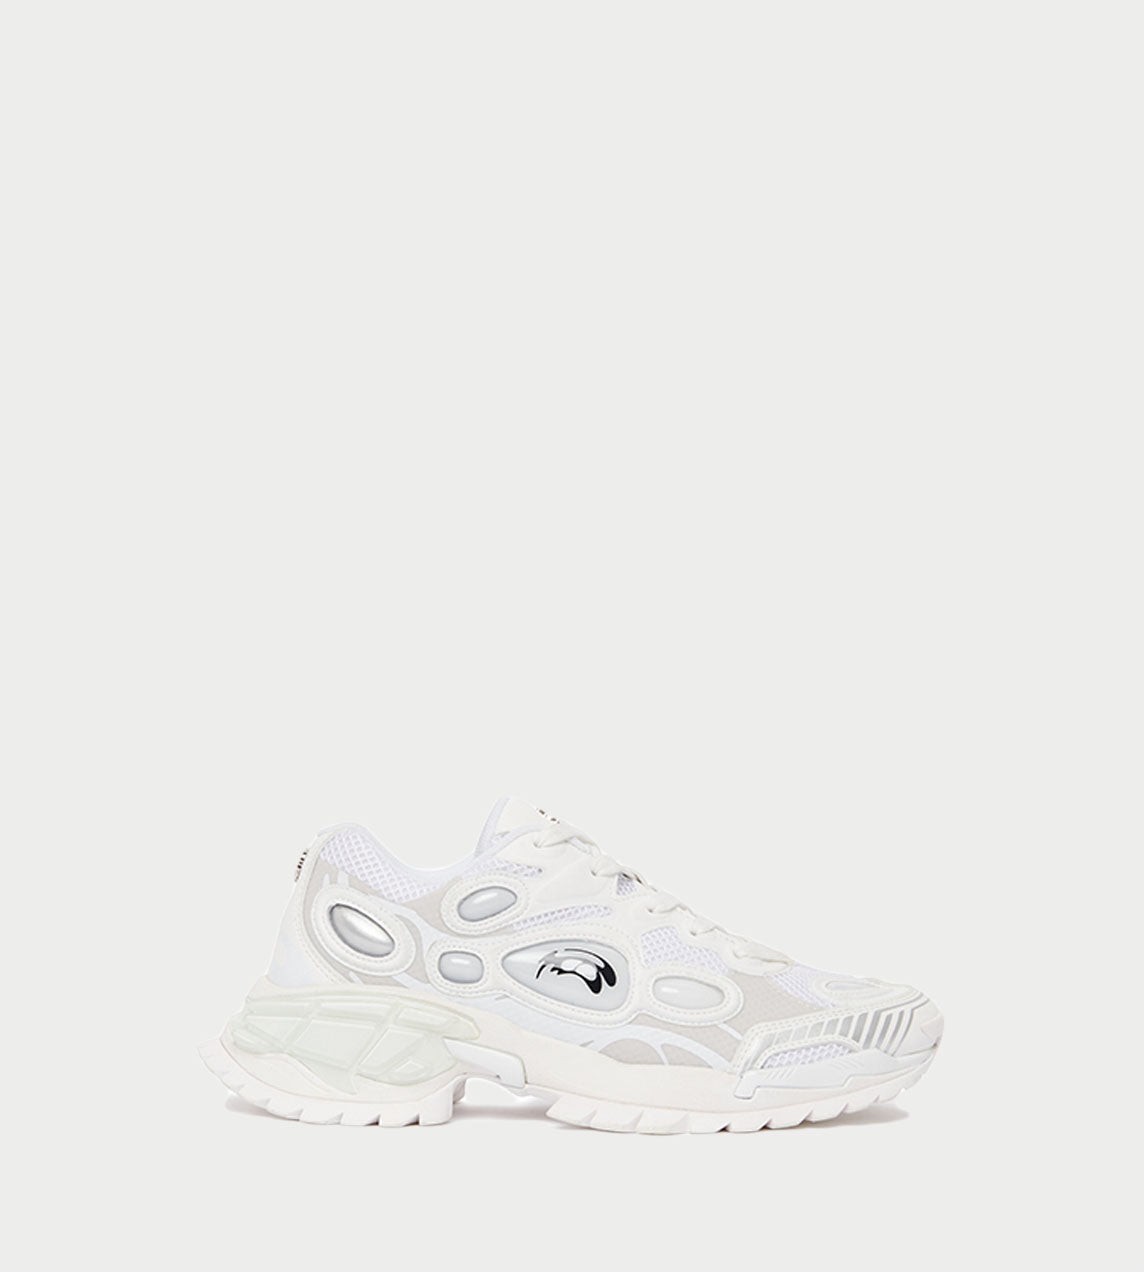 ROMBAUT - Nucleo Sneaker Volcanic White